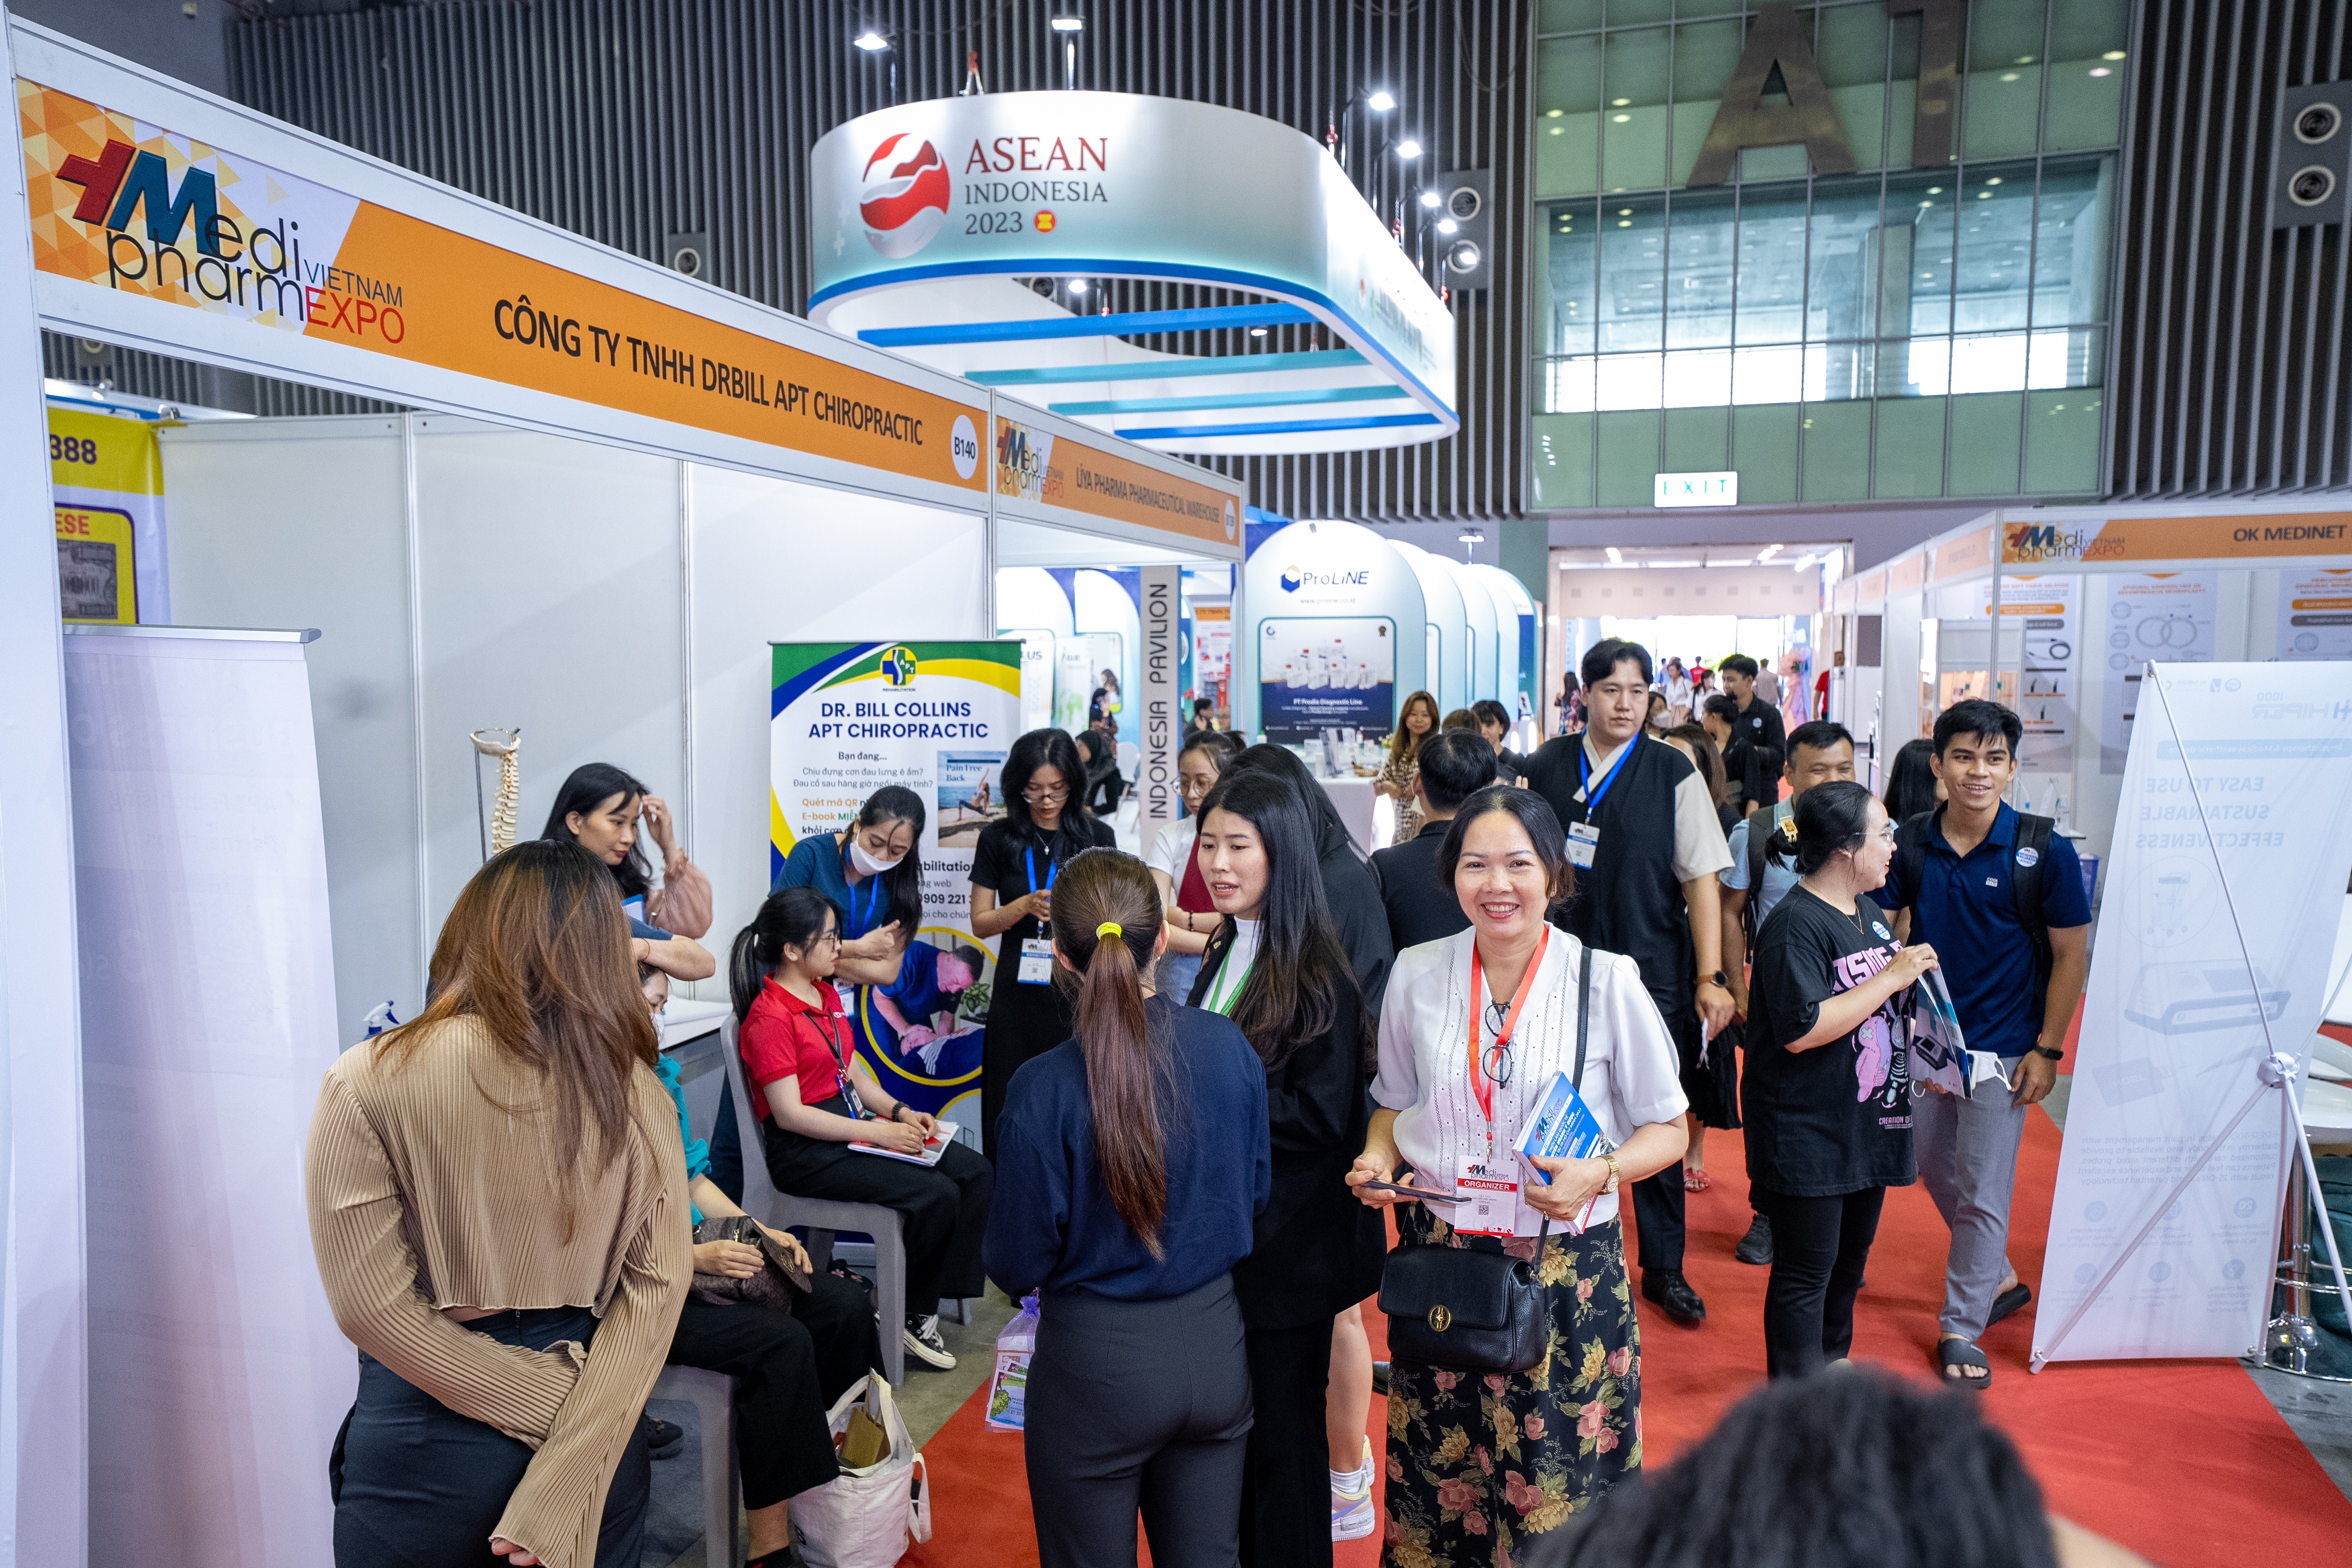 Thông qua Triển lãm Quốc tế chuyên ngành Y dược, các doanh nghiệp y tế Việt Nam có cơ hội trưng bày những sản phẩm, gặp gỡ trao đổi với các nhà đầu tư và đối tác quốc tế.   Triển lãm Quốc tế chuyên ngành Y Dược (Vietnam Medipharm Expo) lần thứ 29 sẽ diễn ra từ ngày 7 đến 9/12/2023 tại Trung tâm Triển lãm Quốc tế Hà Nội ICE (91 Trần Hưng Đạo, quận Hoàn Kiếm, Hà Nội). Vietnam Medipharm Expo 2023 là sự kiện tiêu biểu và toàn diện trong ngành Y tế Việt Nam được tổ chức thường niên dưới sự ủng của Bộ Y Tế và Bộ Công Thương.  Triển lãm dự kiến đón tiếp 170 doanh nghiệp đến từ 18 quốc gia và vùng lãnh thổ như Ấn Độ, Ba Lan, Bangladesh, Đài Loan, Hàn Quốc, Lào, Malaysia, Mỹ, Nga, Nhật Bản, Pakistan, Pháp, Singapore, Tây Ban Nha, Thái Lan, Thụy Sỹ, Trung Quốc, Ý, Việt Nam… đăng ký tham gia trưng bày tại 220 gian hàng với đa dạng các lĩnh vực sản phẩm trưng bày. Góp mặt tại Triển lãm năm nay là những doanh nghiệp uy tín trong nước như Công ty CP Dược phẩm Bến Tre (BEPHARCO), Công ty CP nhà máy Wembley Medical, Công ty TNHH Med Gyn Vina… Bên cạnh các đơn vị triển lãm trong nước, Vietnam Medi-pharm Expo chào đón những tên tuổi lớn trên thị trường quốc tế như các công ty dược phẩm như  SGH MEDICAL PHARMA (Pháp), SOLCO BIOMEDICAL (Hàn Quốc), SEODONG MEDICAL (Hàn Quốc), VERDI EYEWARE (Hàn Quốc)...  Hiện nay, xu hướng thị trường hóa dịch vụ khám chữa bệnh của ngành y tế Việt Nam đang trải qua một sự chuyển đổi đáng kể. Việc hiện đại hóa cơ sở hạ tầng y tế và nâng cao chất lượng dịch vụ đã mang lại nhiều lợi ích cho người dân. Khám chữa bệnh trở nên tiện lợi hơn và các phương pháp điều trị tiên tiến sẽ giúp cải thiện chất lượng cuộc sống.  Từ góc độ kinh doanh, xu hướng này đã khiến các doanh nghiệp y tế cần phải cạnh tranh với nhau để cung cấp các dịch vụ tốt hơn, phát triển công nghệ mới, cải thiện quy trình và tối ưu hóa chi phí. Ngoài ra, việc thúc đẩy xuất nhập khẩu trong lĩnh vực y tế cũng đang trở nên quan trọng hơn bao giờ hết.  Việt Nam có cơ hội thu hút các công ty quốc tế và tiếp cận với kiến thức cũng như công nghệ tiên tiến. Điều này giúp tăng cường hợp tác quốc tế và tạo ra những cơ hội kinh doanh mới cho doanh nghiệp Việt Nam. Thông qua Triển lãm Quốc tế chuyên ngành Y dược, các doanh nghiệp y tế Việt Nam có cơ hội trưng bày những sản phẩm, công nghệ và dịch vụ tiên tiến trực tiếp với khách hàng tiềm năng, gặp gỡ trao đổi với các nhà đầu tư và đối tác quốc tế. Qua đó xây dựng mối quan hệ với các nhà sản xuất và nhà cung cấp, đồng thời tạo điều kiện thuận lợi cho việc tiếp cận các thị trường nước ngoài. Để thúc đẩy xúc tiến thương mại hiệu quả, Công ty Vinexad đã lên kế hoạch tiếp cận giới chuyên gia và cộng đồng doanh nghiệp tại các thành phố lớn bằng chương trình kết nối giao thương trực tiếp giữa khách tham gia trưng bày tại triển lãm và người mua (B2B matching), hàng loạt các hội thảo với các chủ đề đa dạng sẽ diễn ra trong 3 ngày triển lãm.